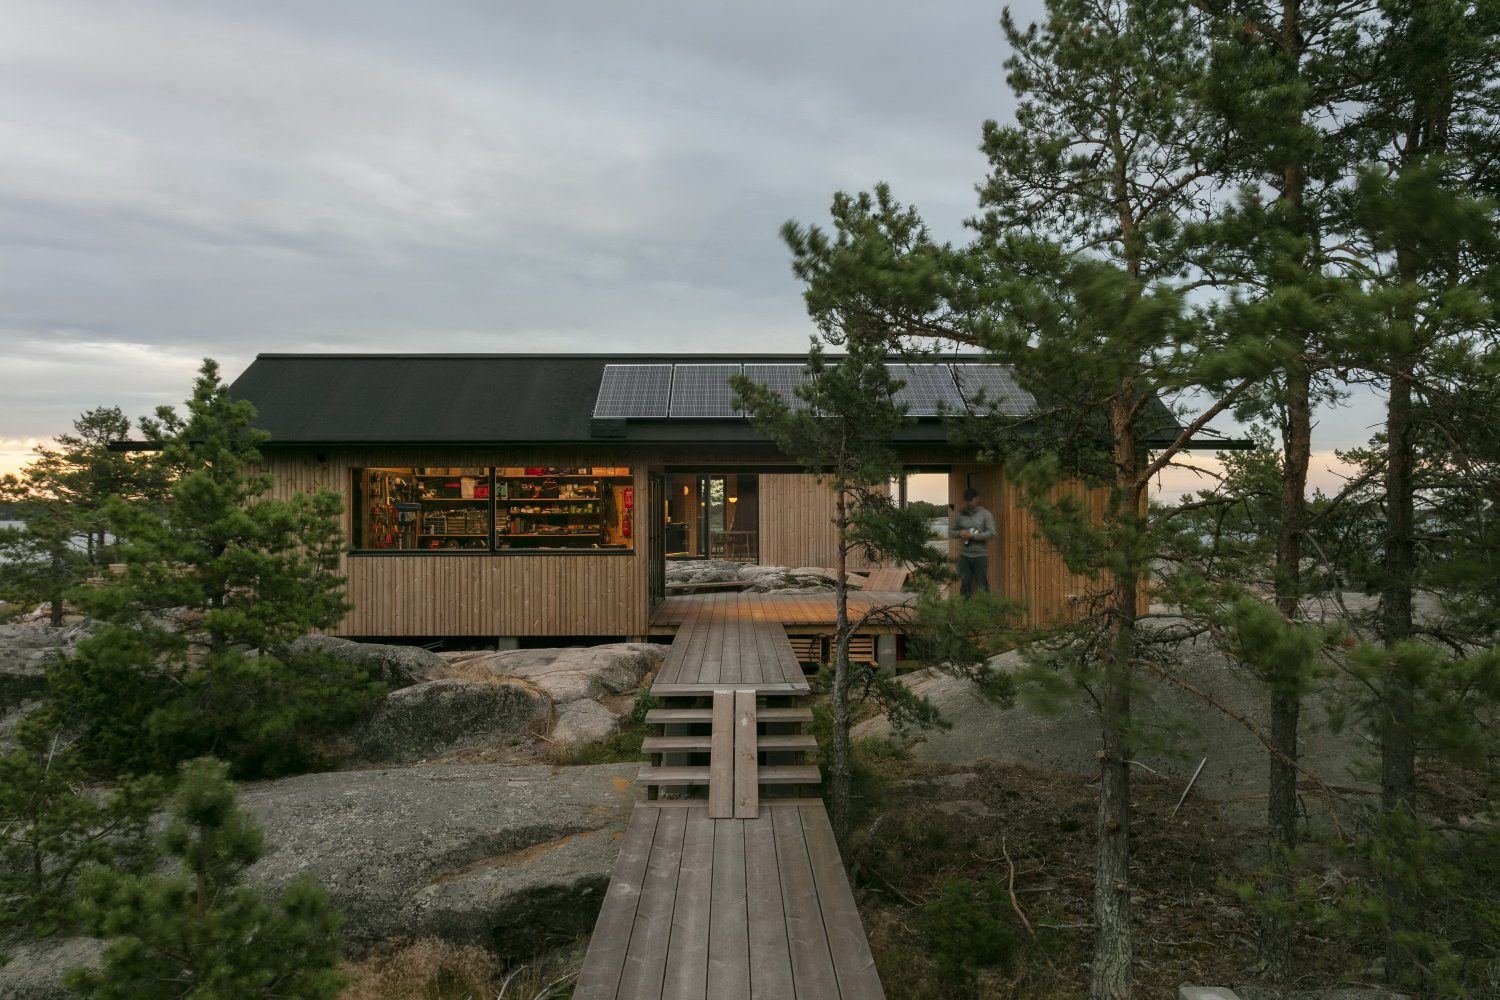 Project Ö Cabin by Aleksi Hautamäki and Milla Selkimäki